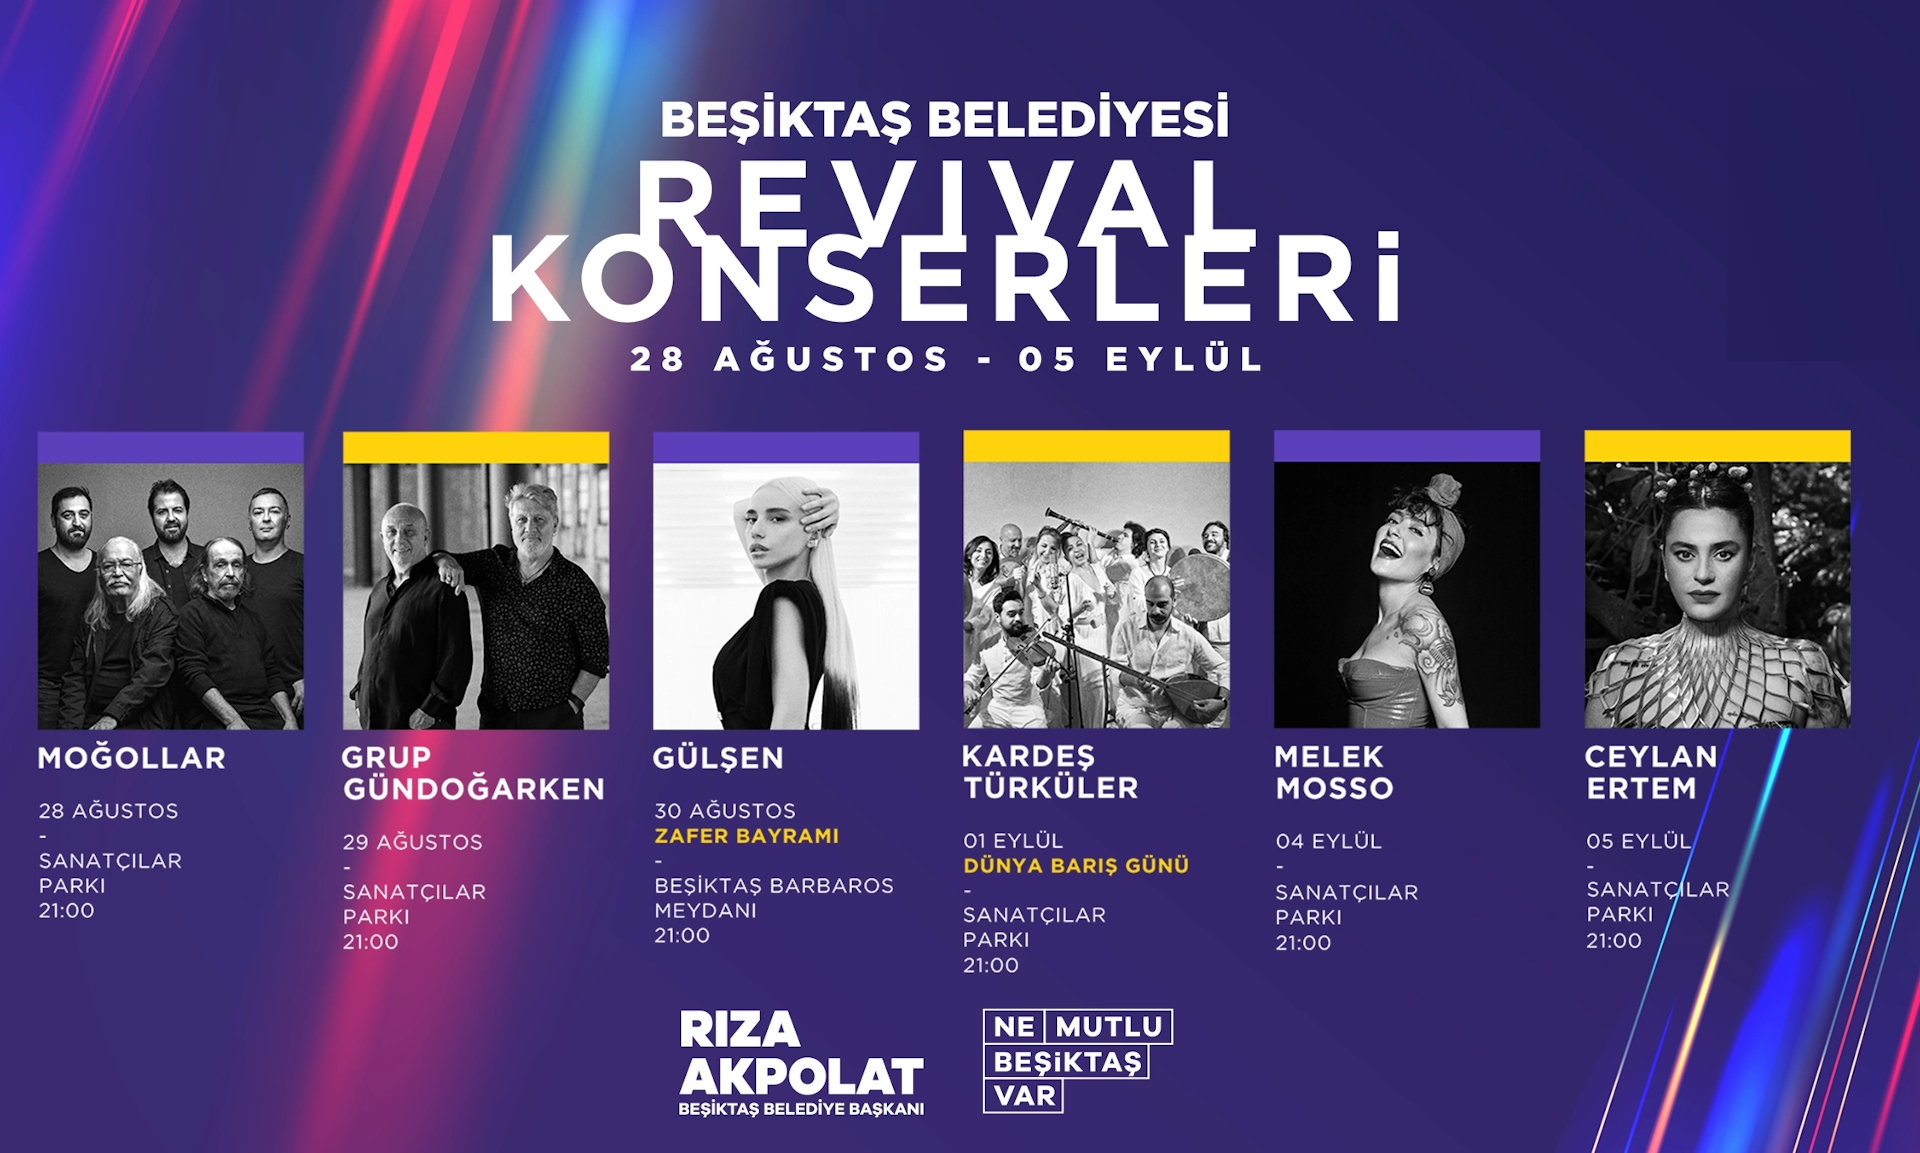 Moğollar - Beşiktaş Belediyesi Revival Konserleri